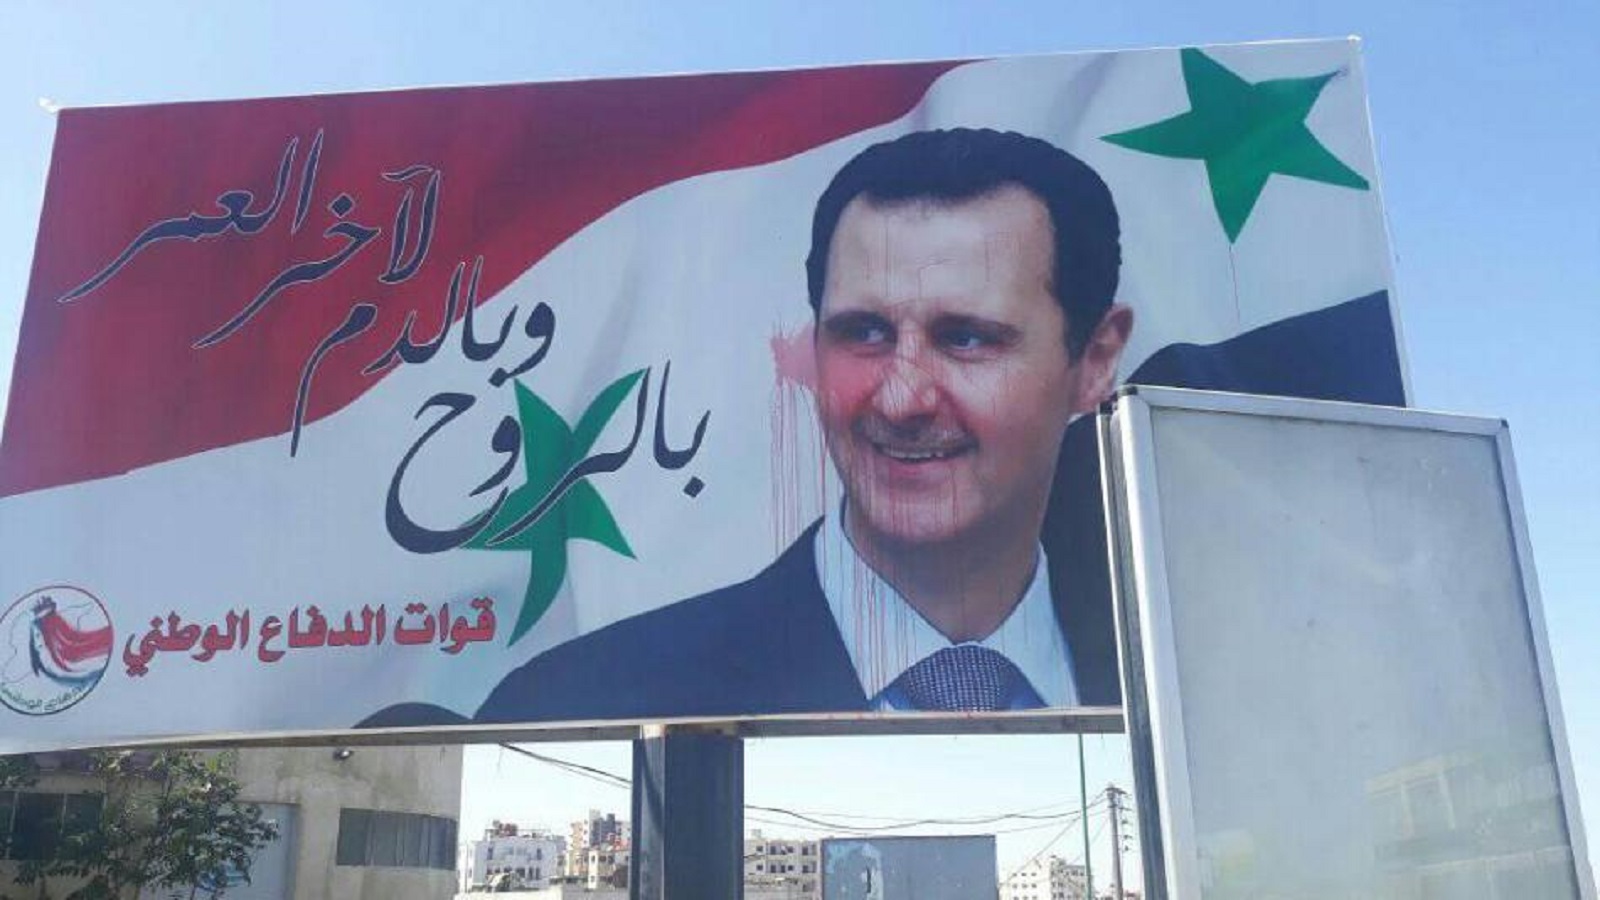 انتخابات الأسد:الرفض الدولي يتسع.. ولن يترك أثراً